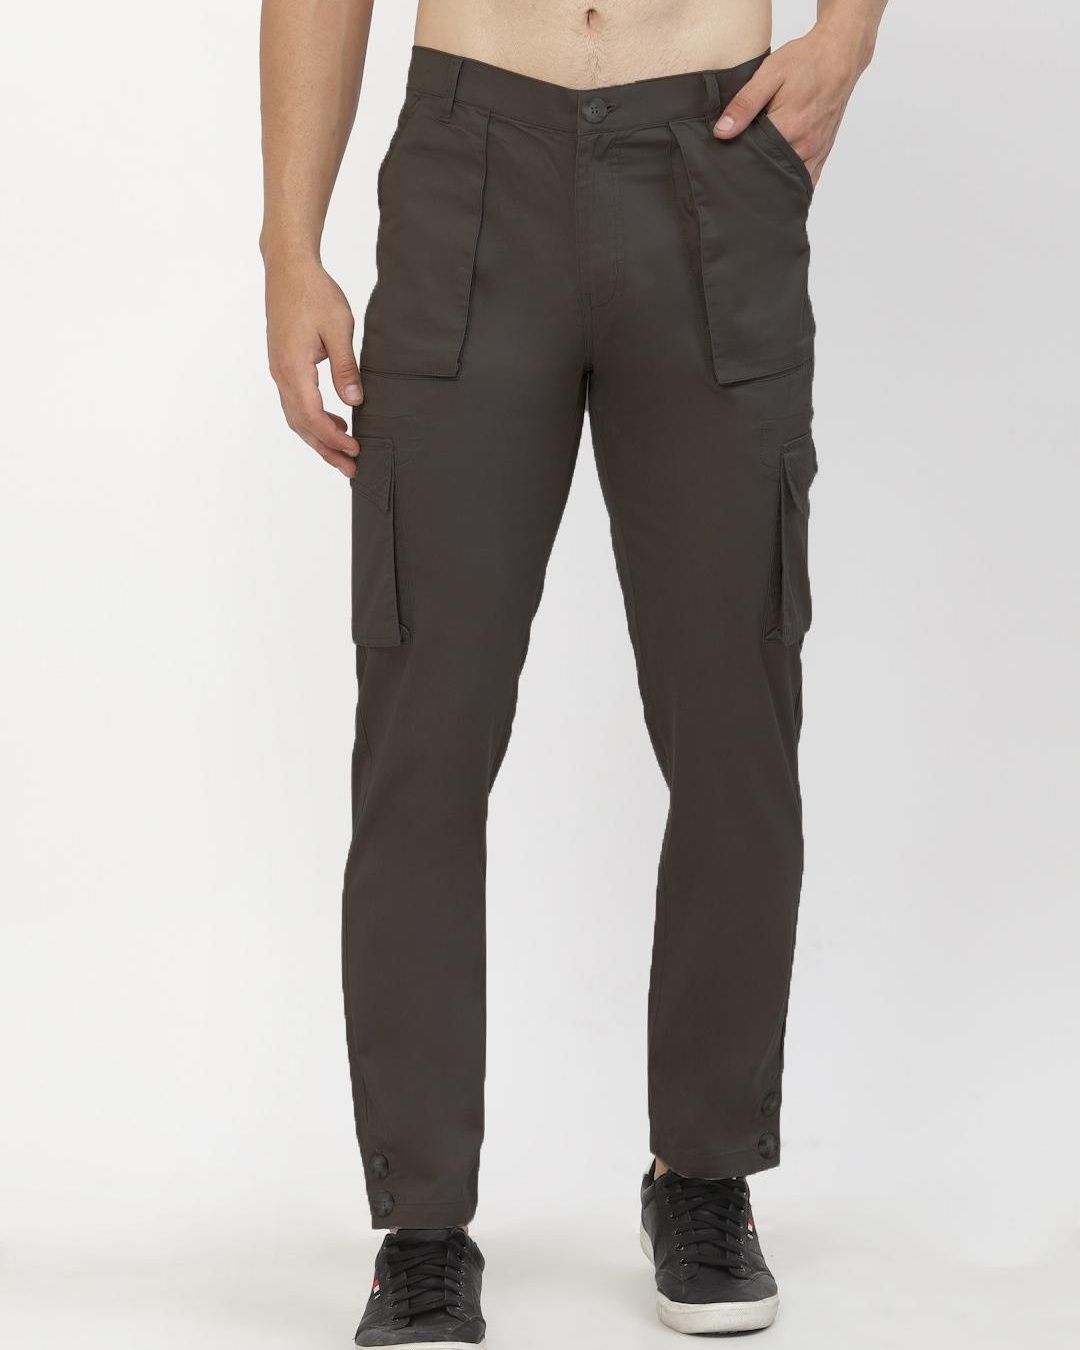 Buy Men's Brown Cargo Trousers Online at Bewakoof